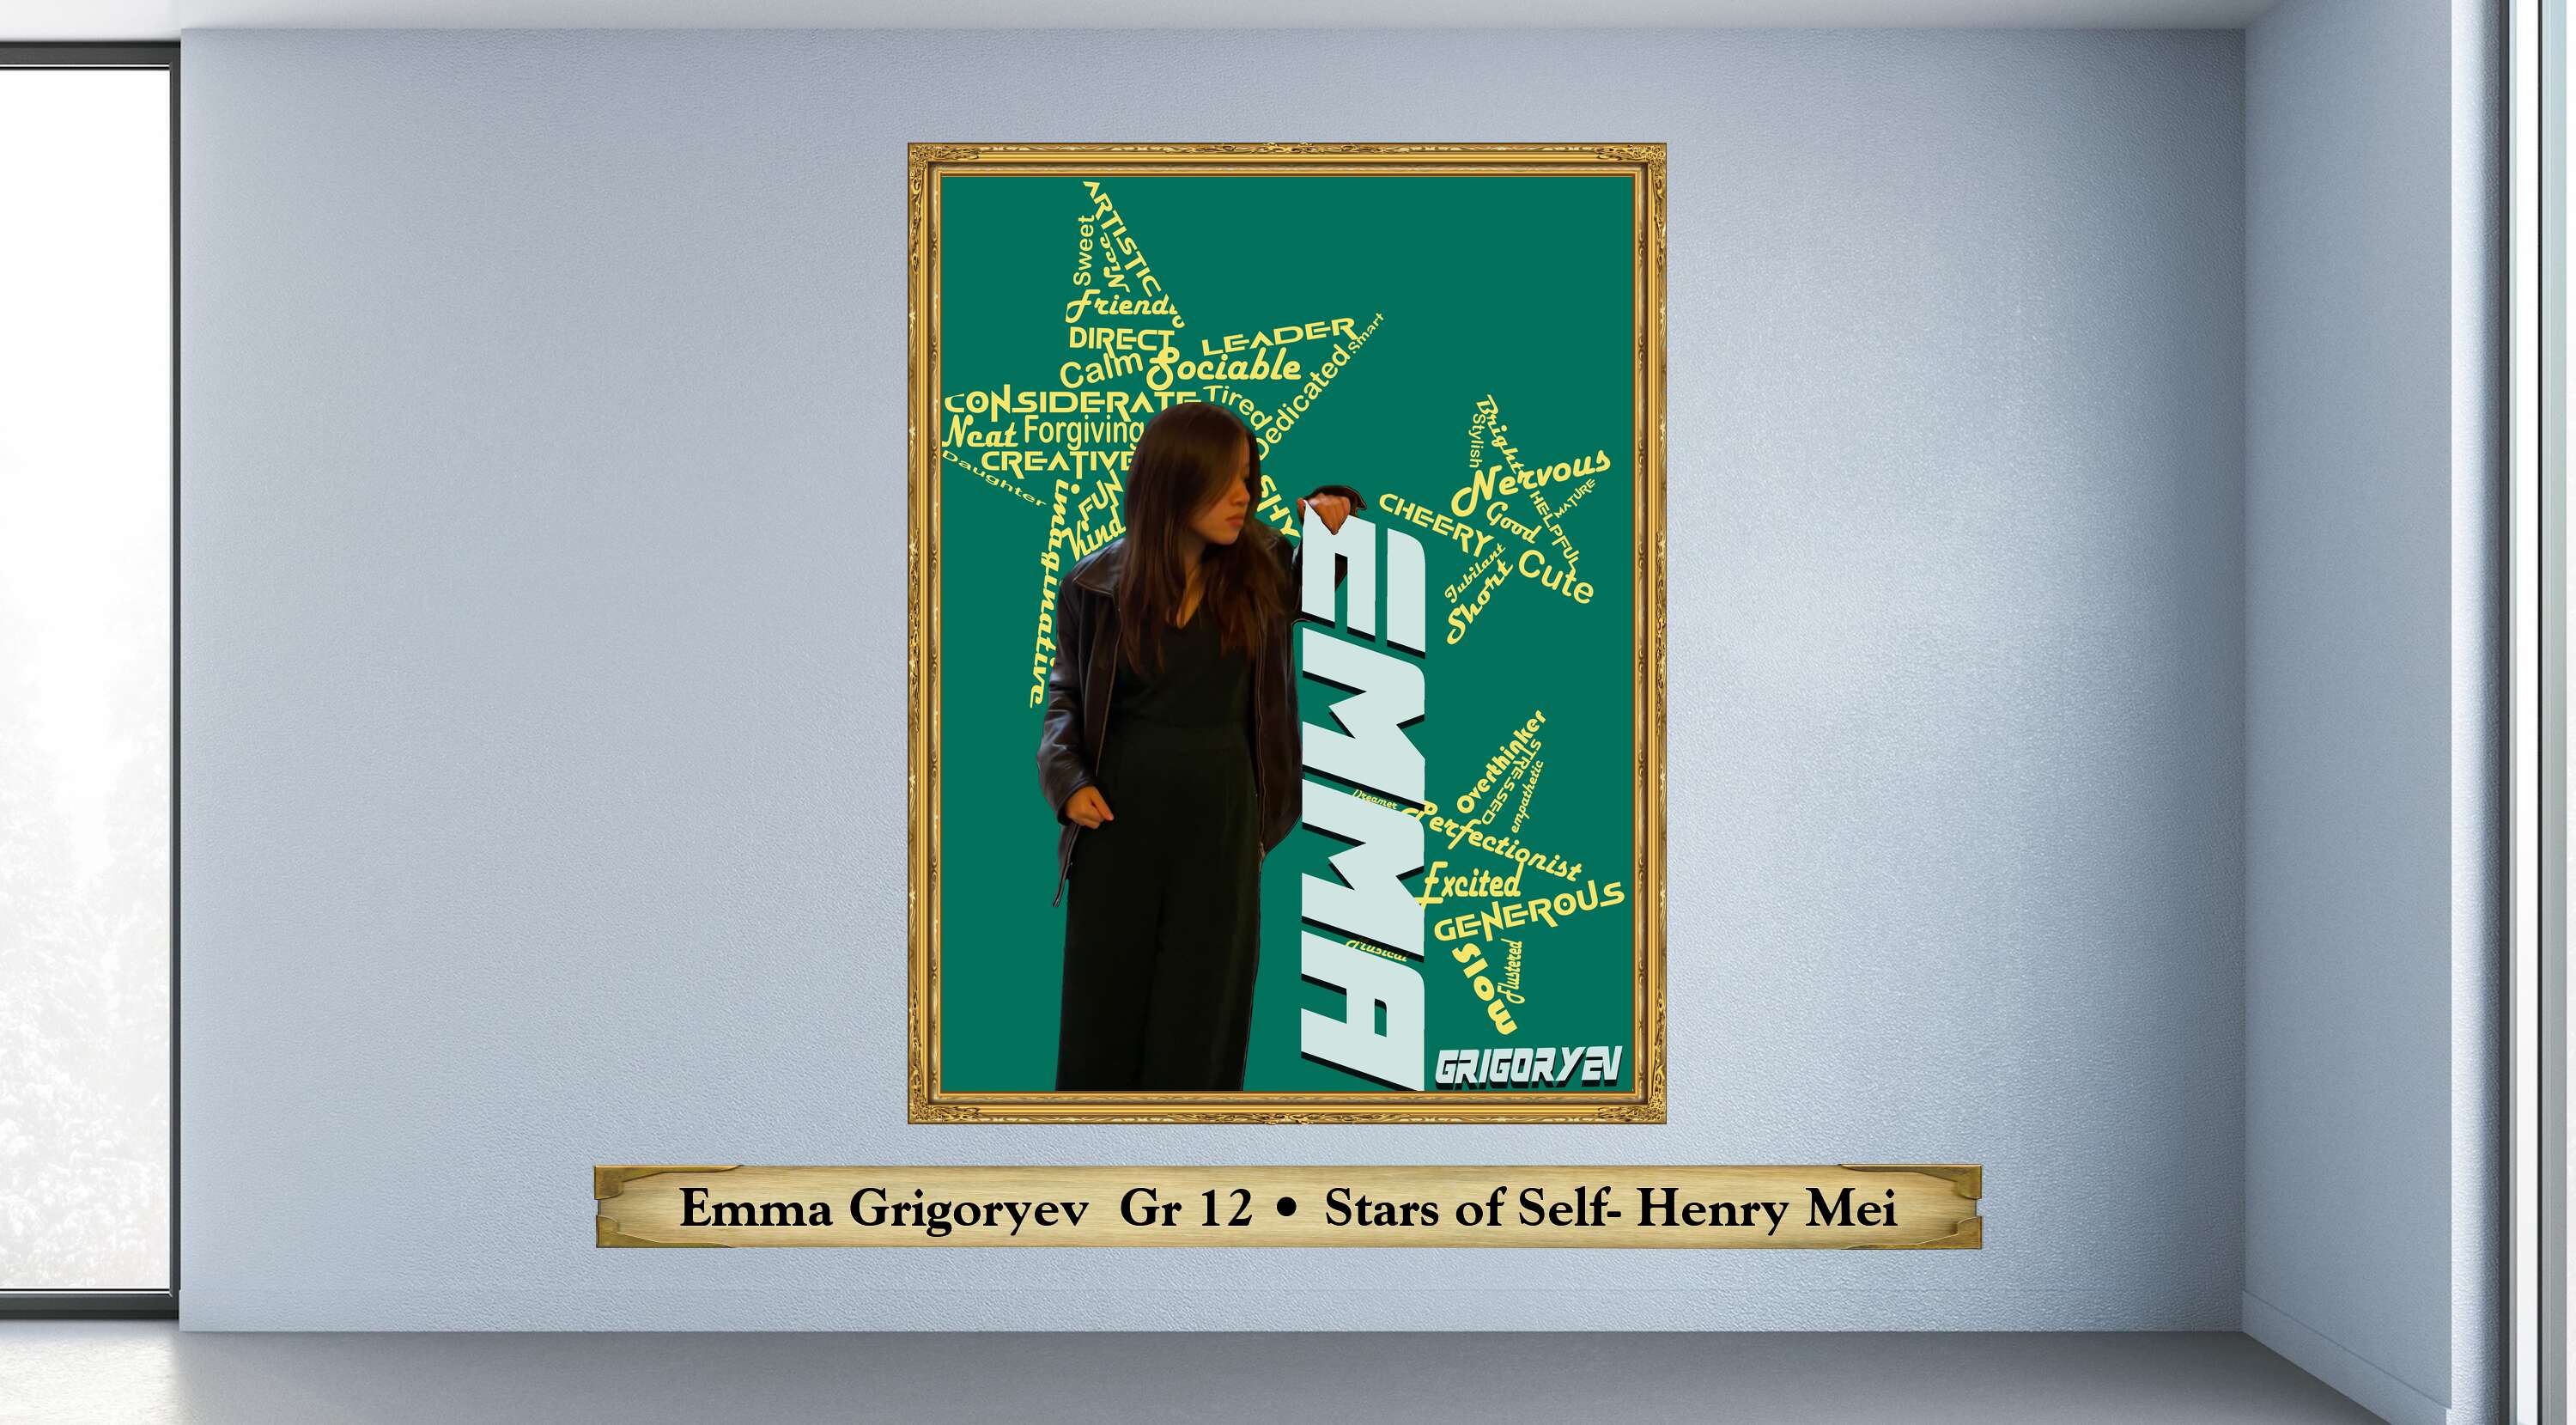 Emma Grigoryev  Gr 12 • Stars of Self- Henry Mei